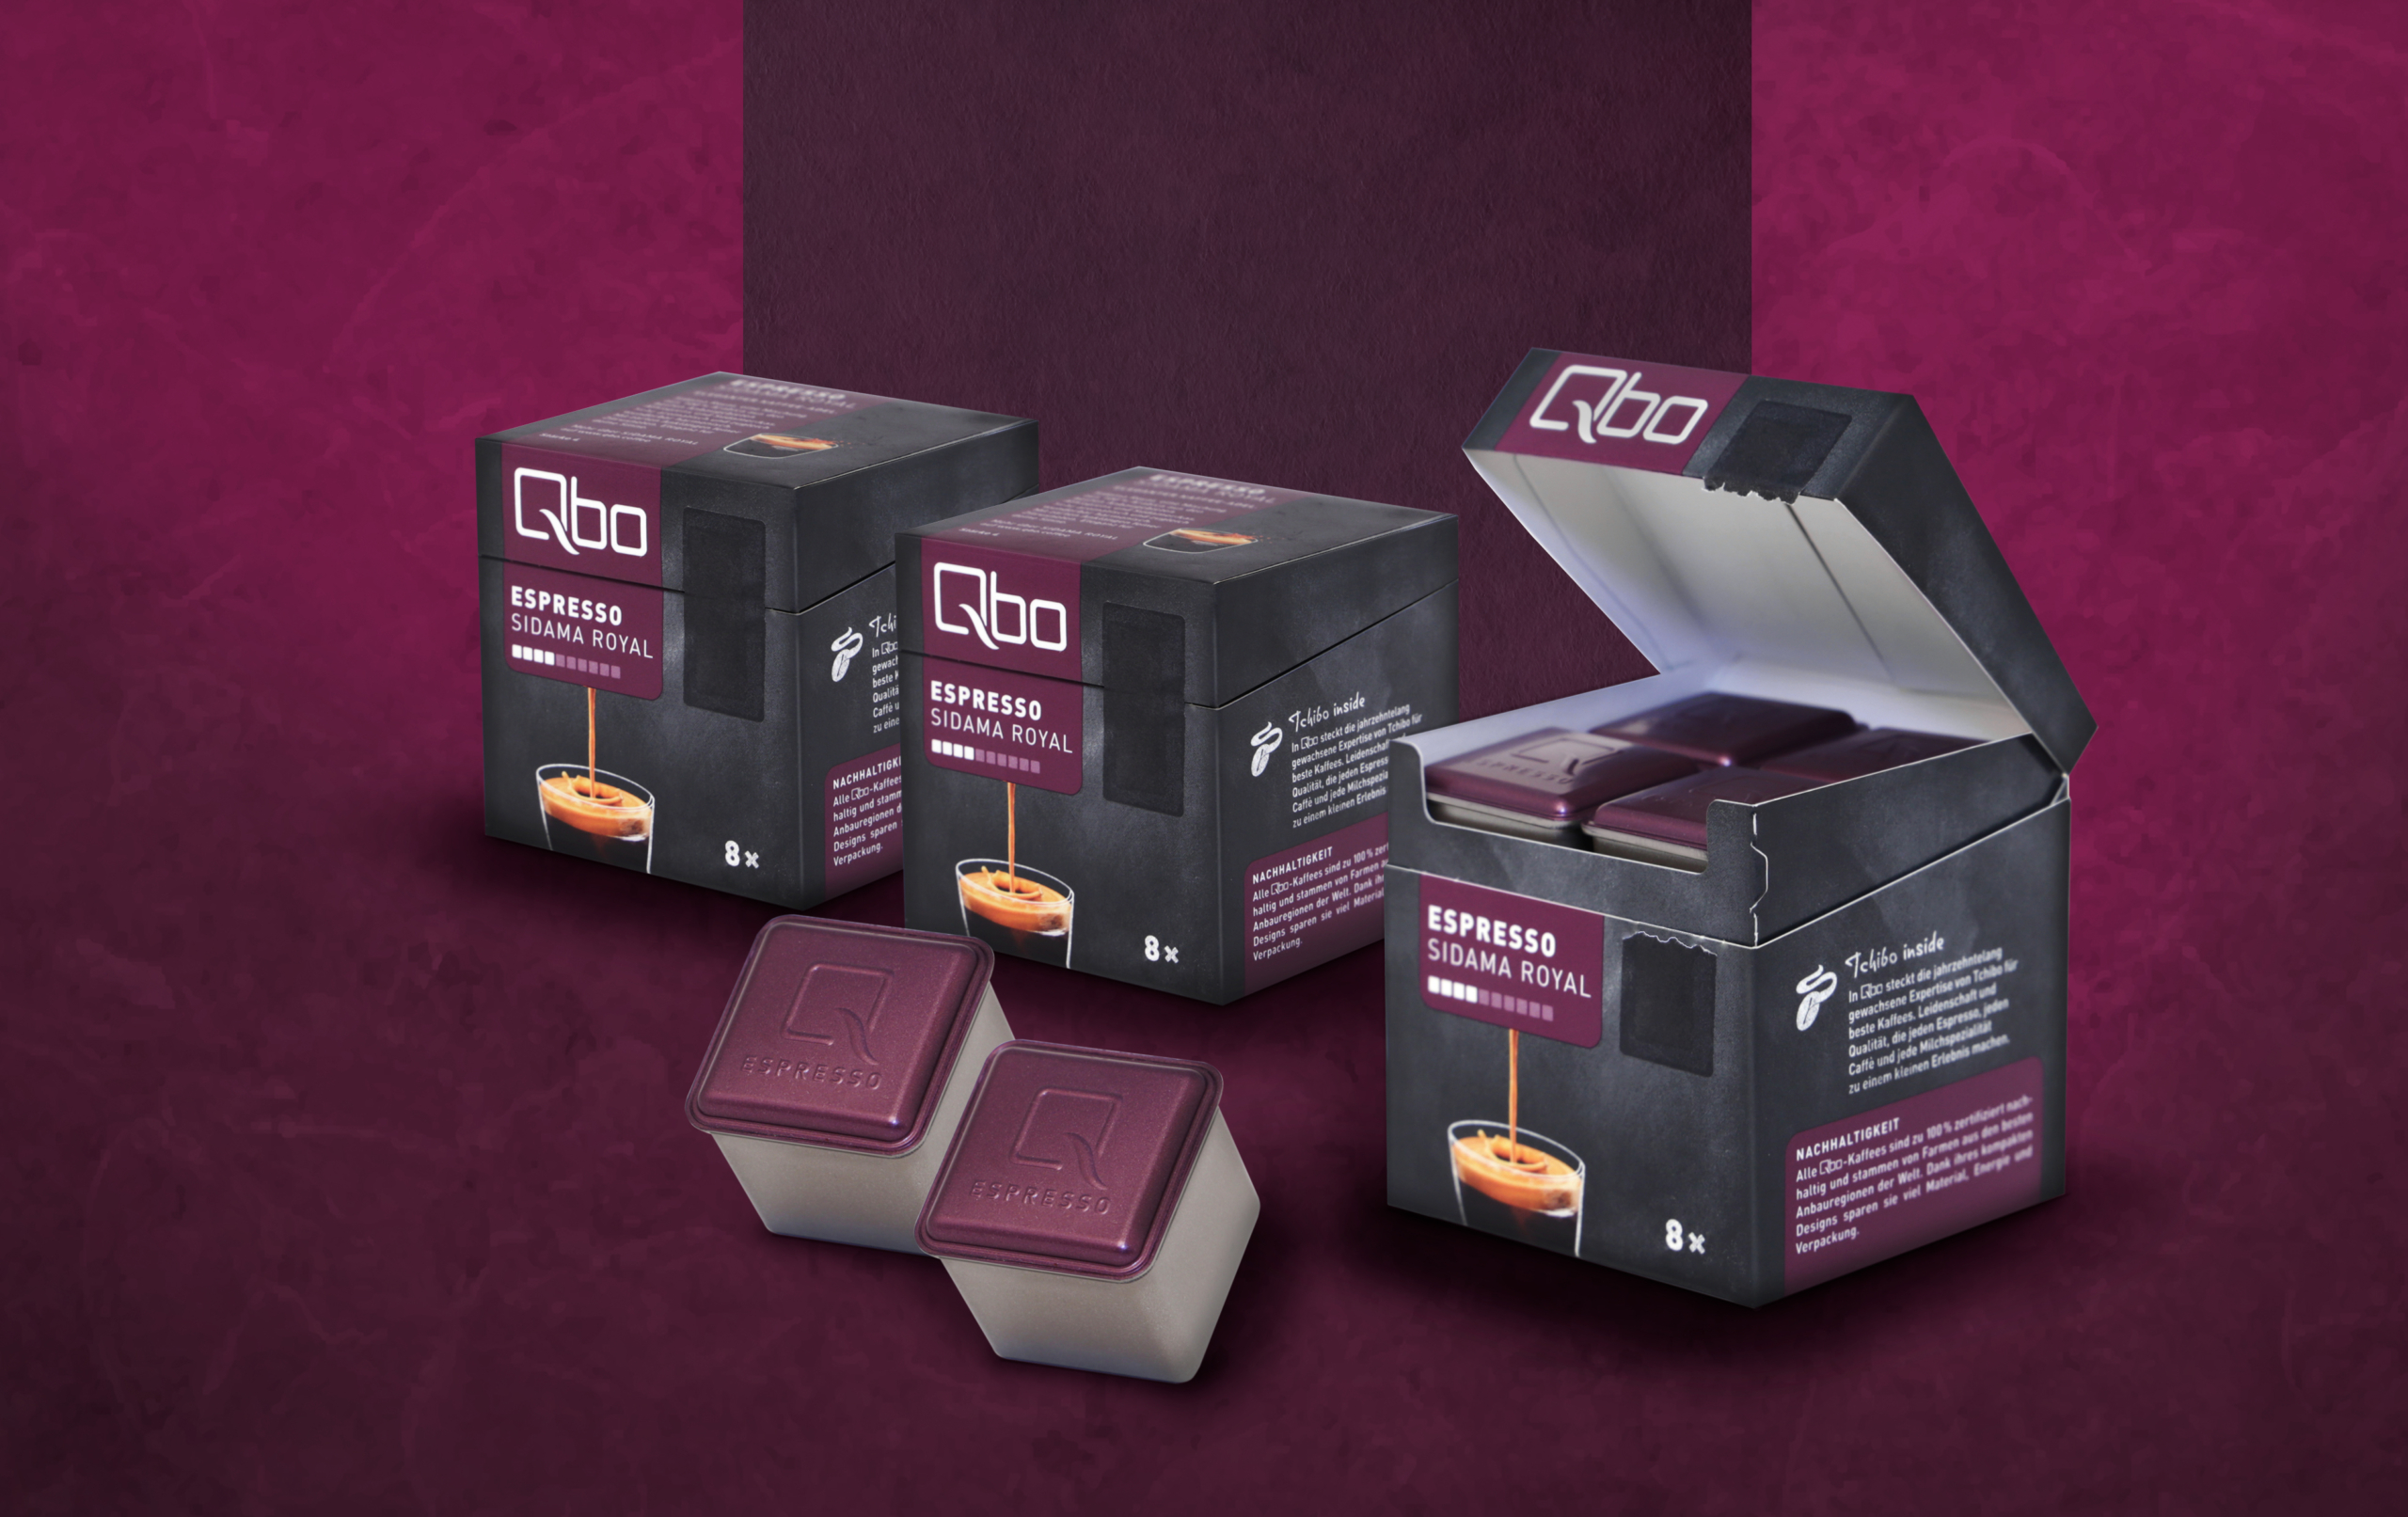 Tchibo Qbo Packaging Redesign und Development